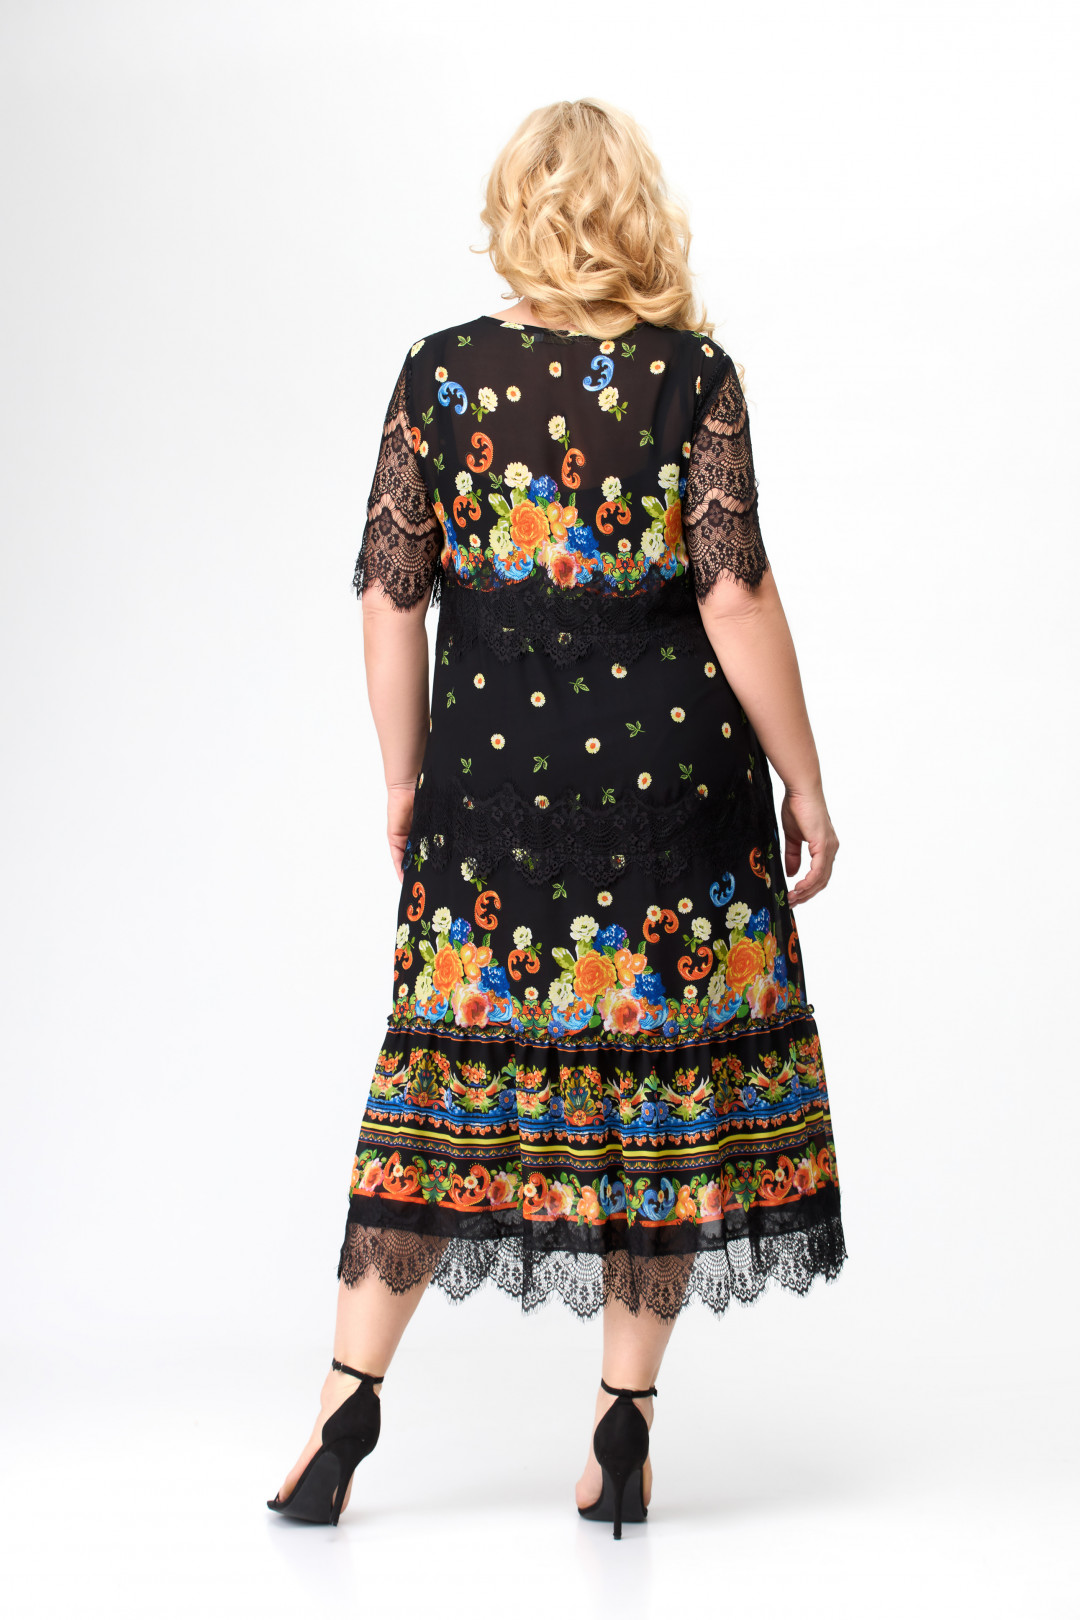 Платье Светлана-Стиль 1505 черный+узор